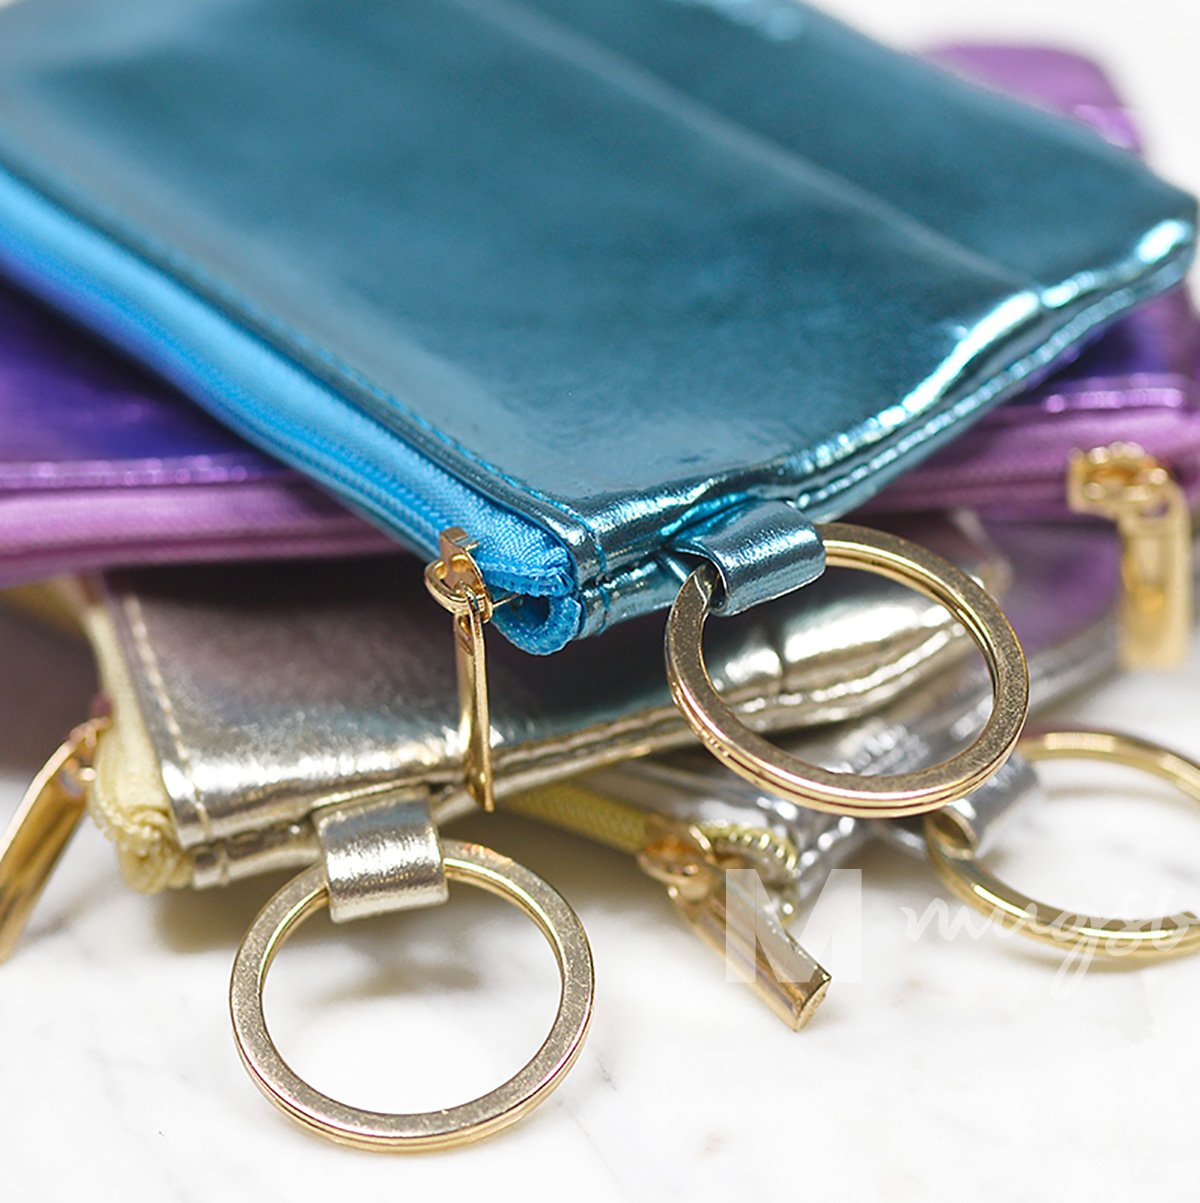 Blue Metallic Key Ring Wallet